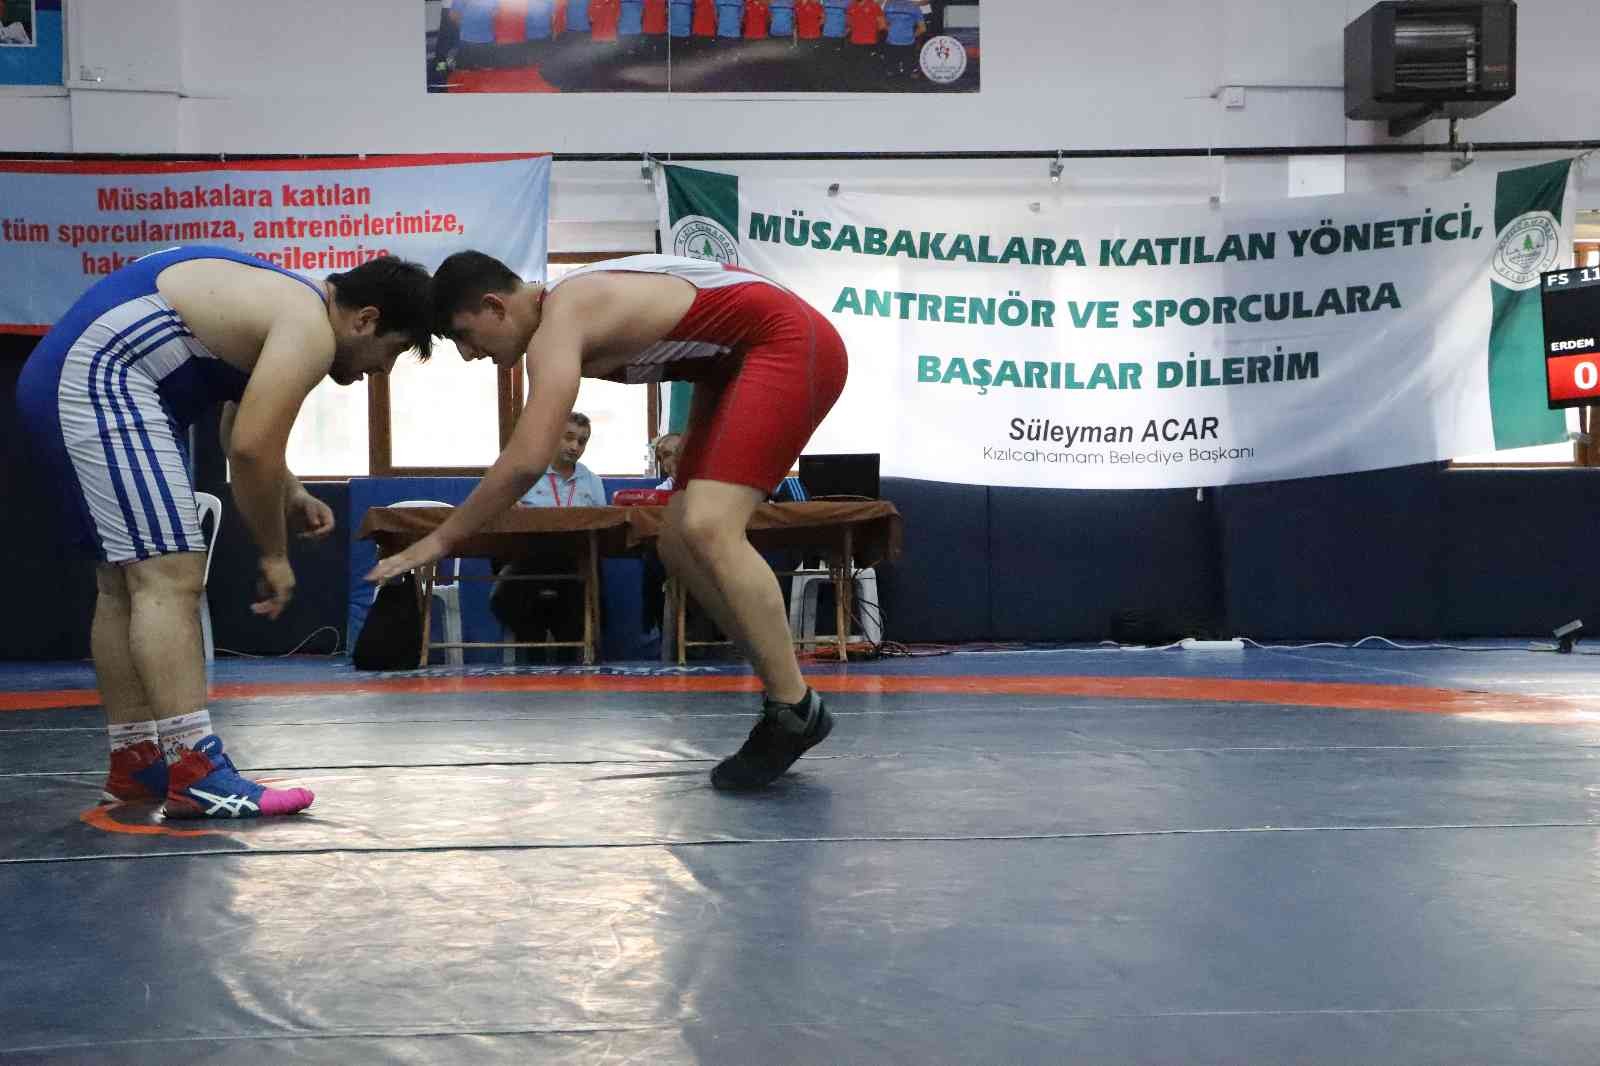 Kızılcahamam’da 310 sporcu güreşti #ankara